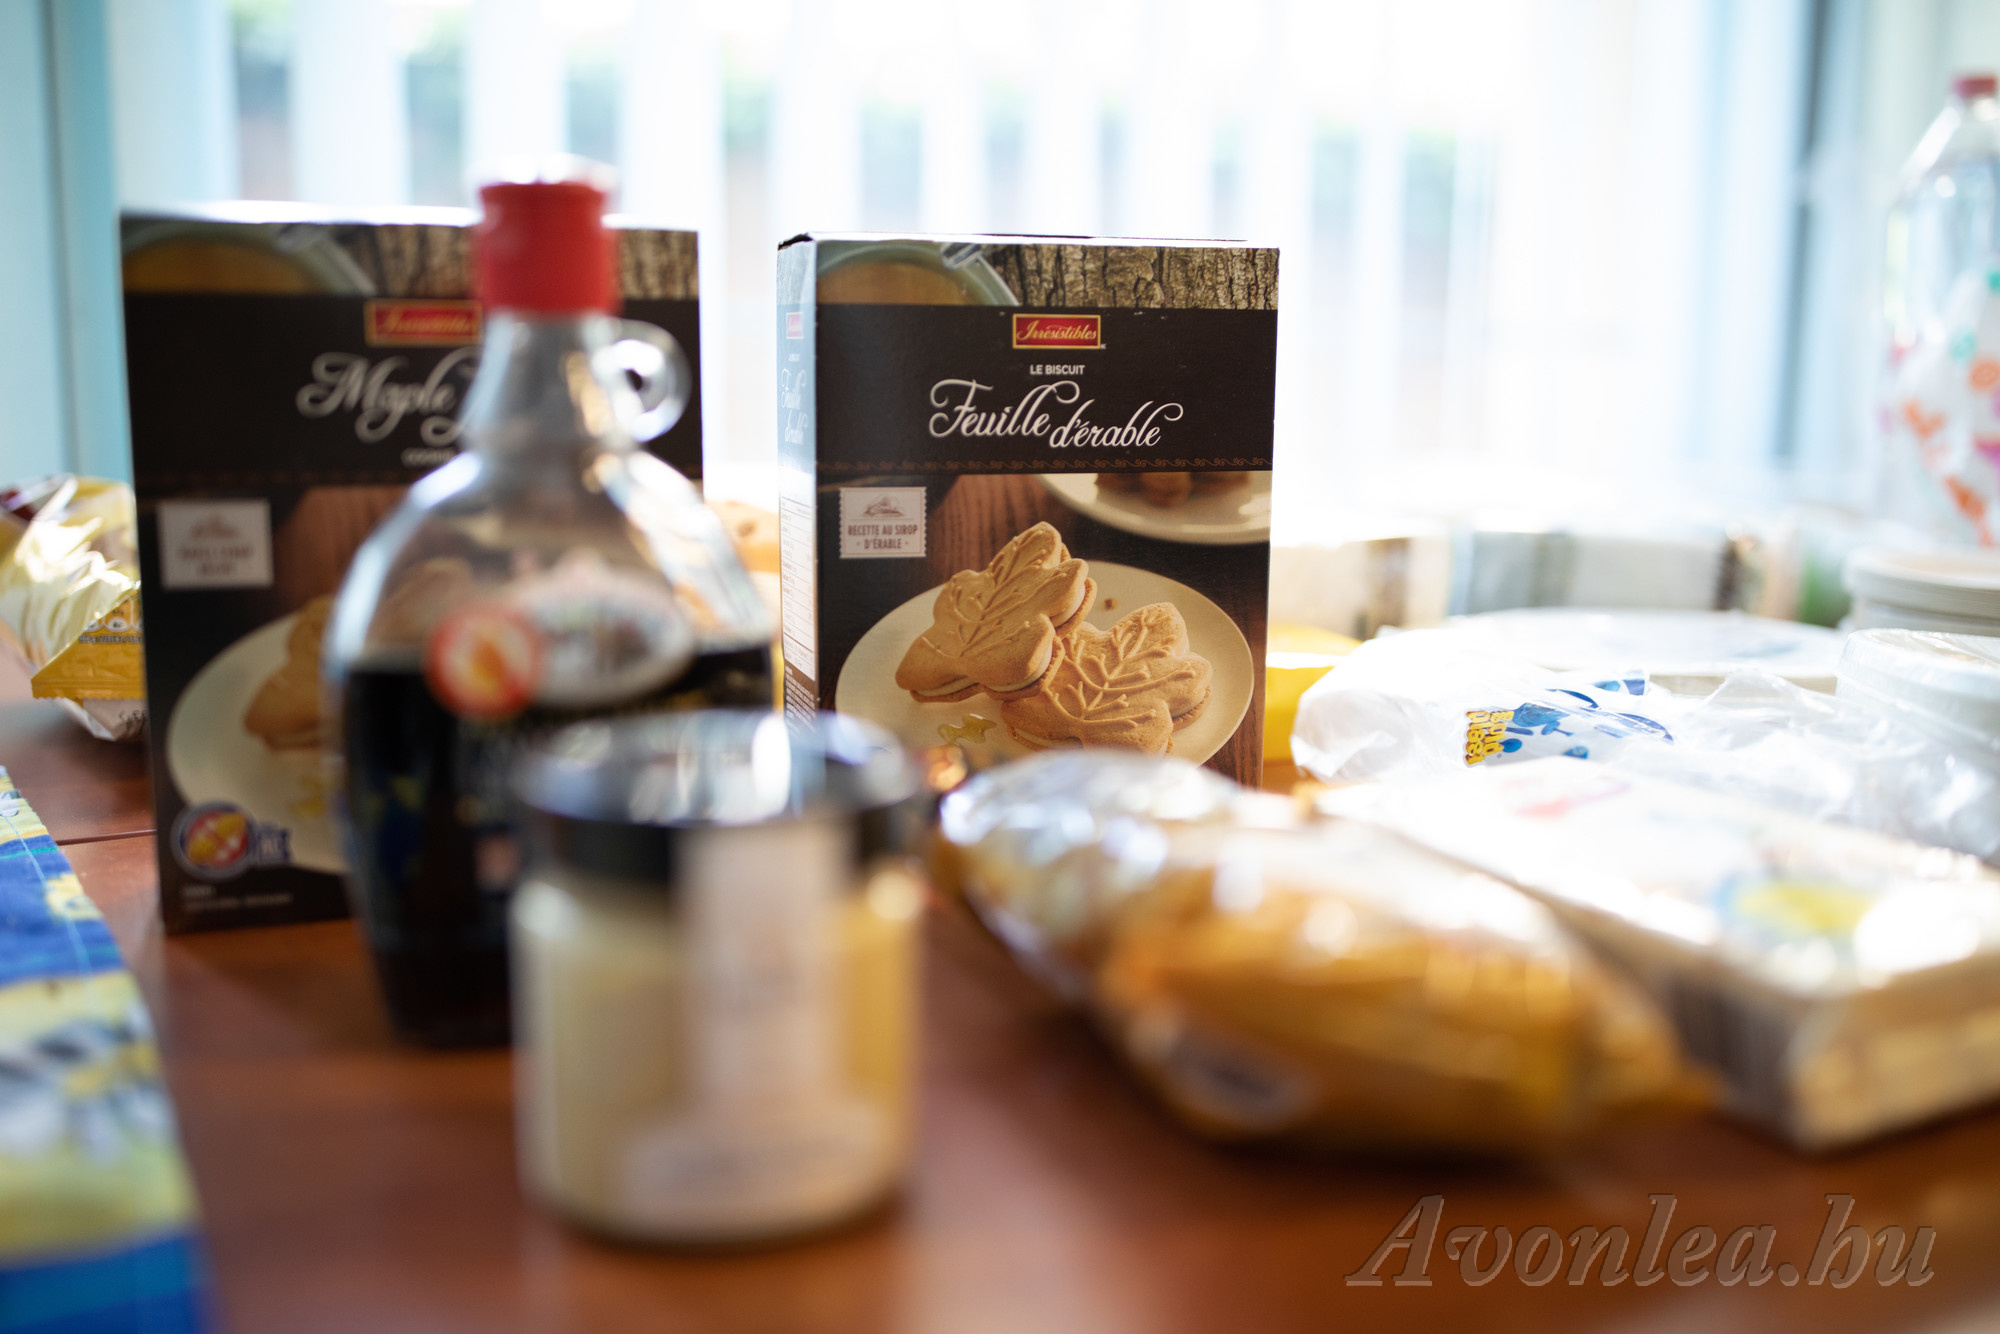 Juharszirup, illetve juharszirupos termékek: juharvaj, keksz és popcorn